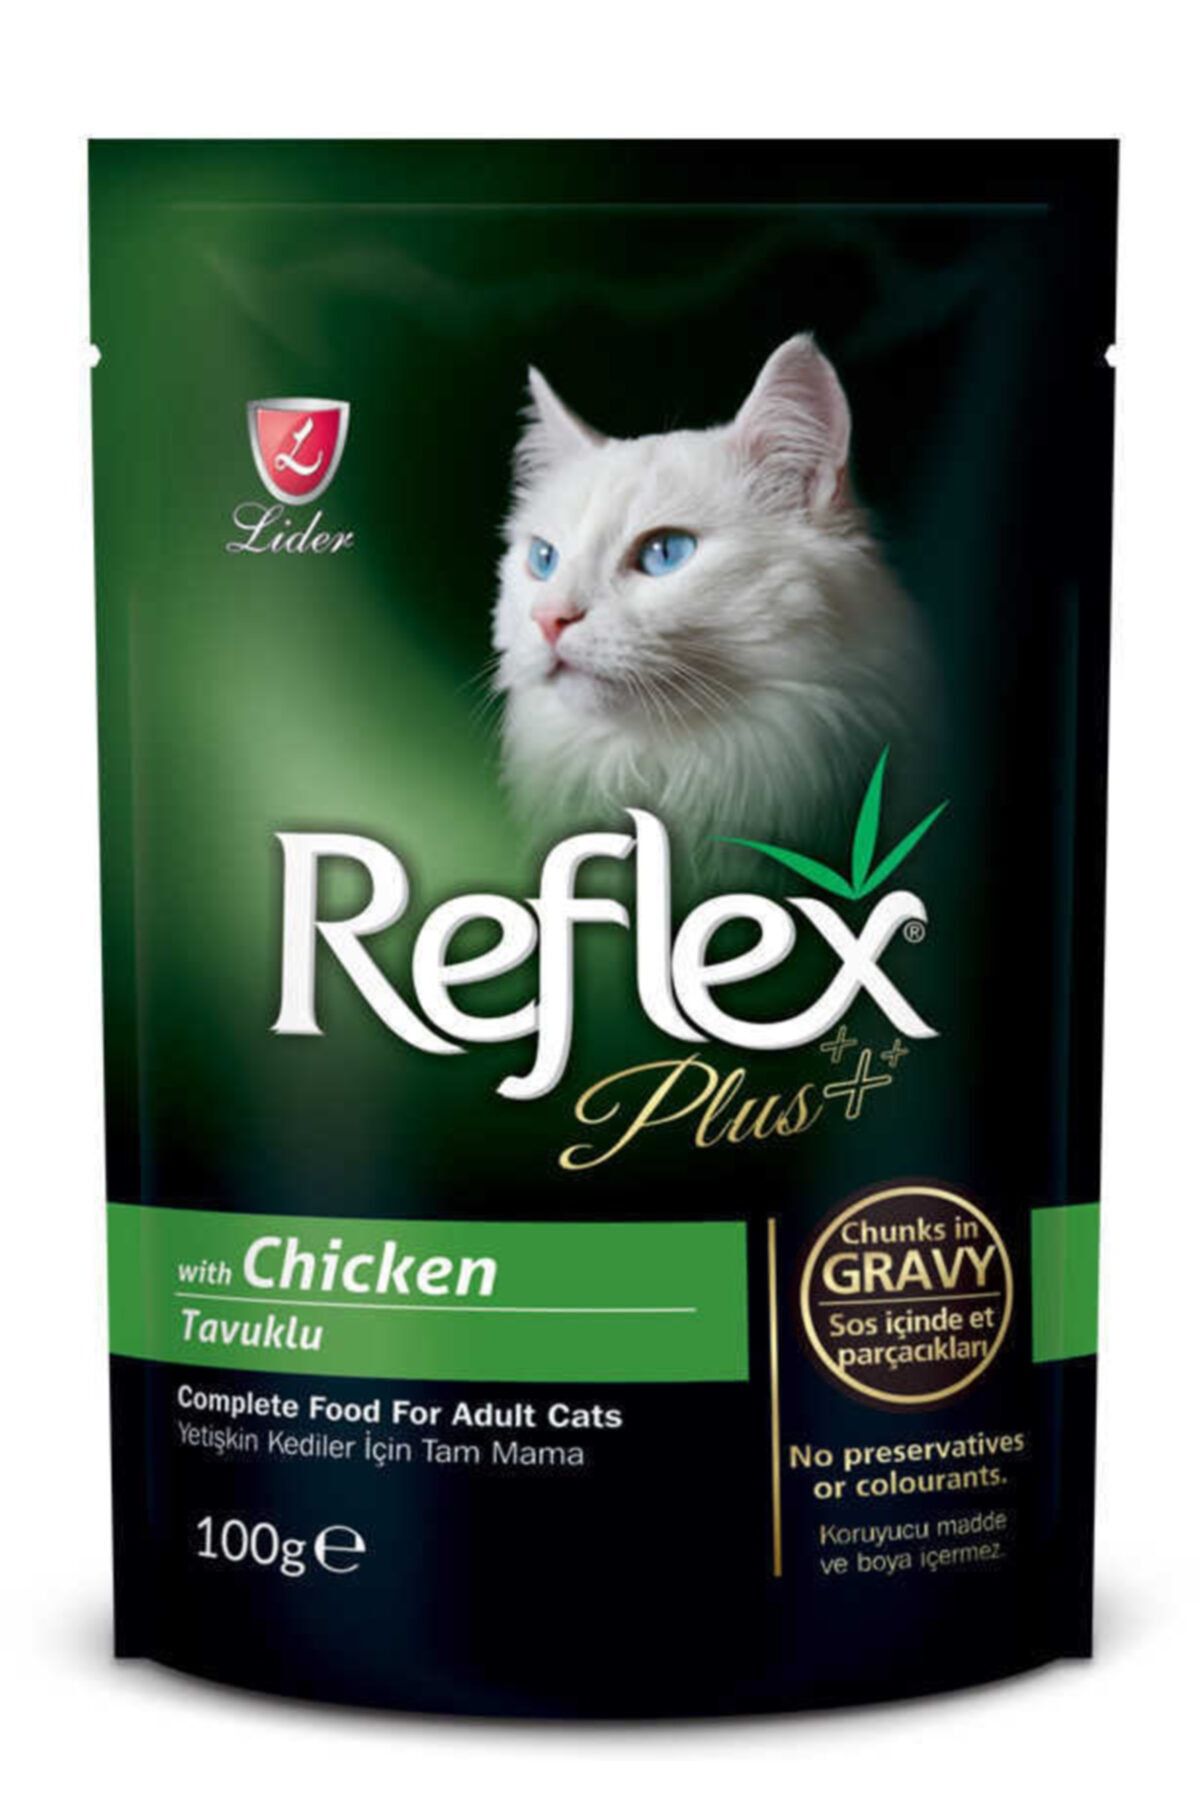 Reflex Yetişkin Kediler Için Tavuklu Sos Içinde Et Parçacıkları 100 G-20 Adet